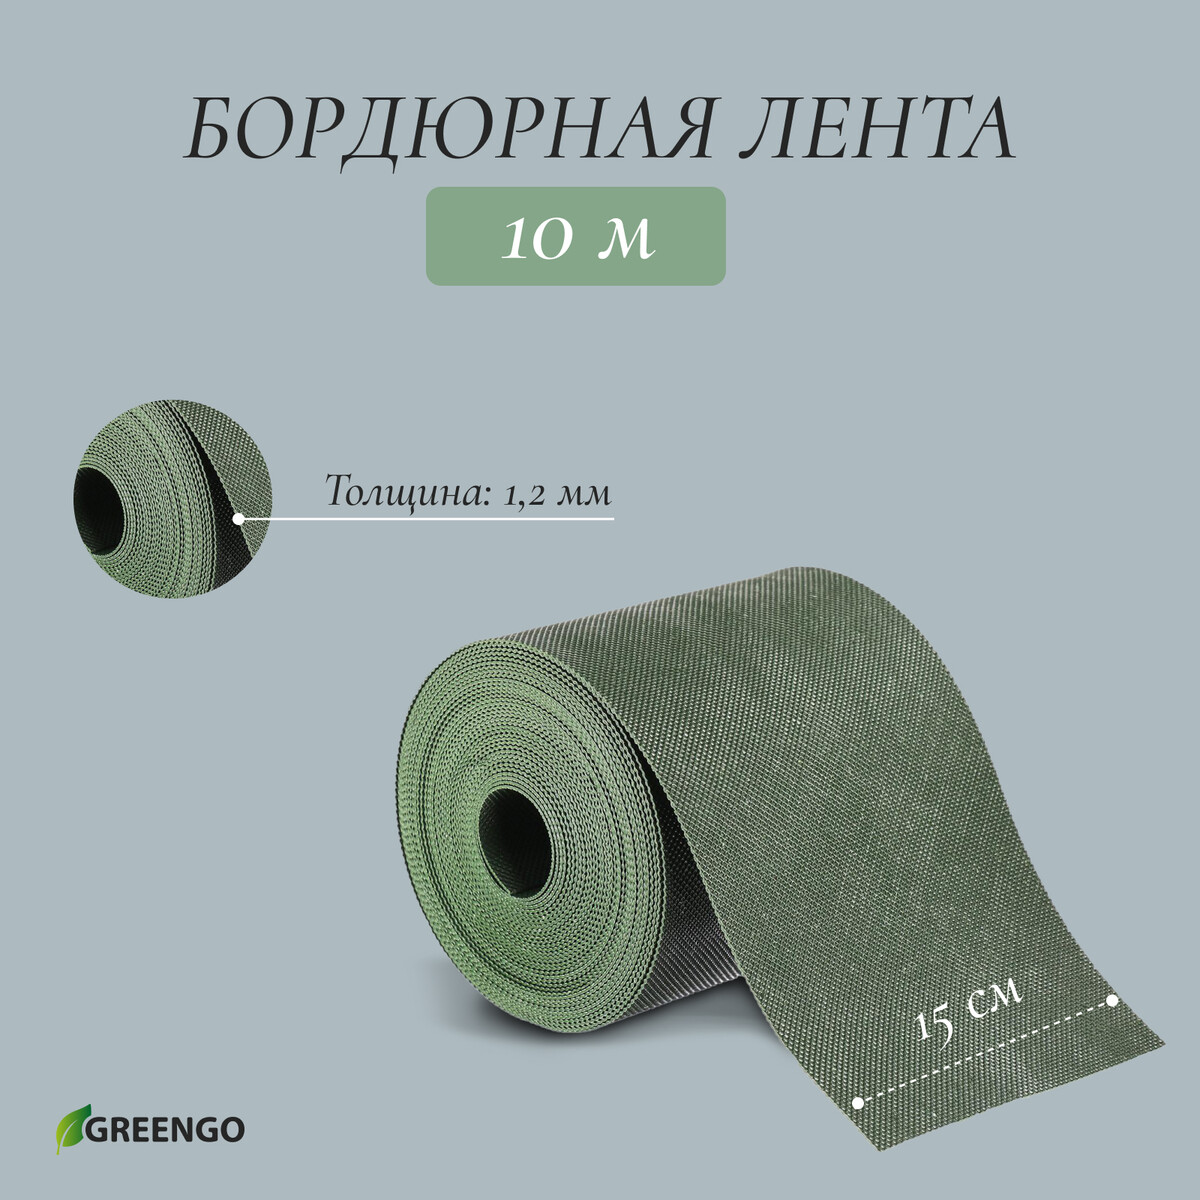 Лента бордюрная, 0.15 × 10 м, толщина 1.2 мм, пластиковая, зеленая, greengo лента бордюрная 0 3 × 10 м толщина 1 2 мм пластиковая зеленая greengo